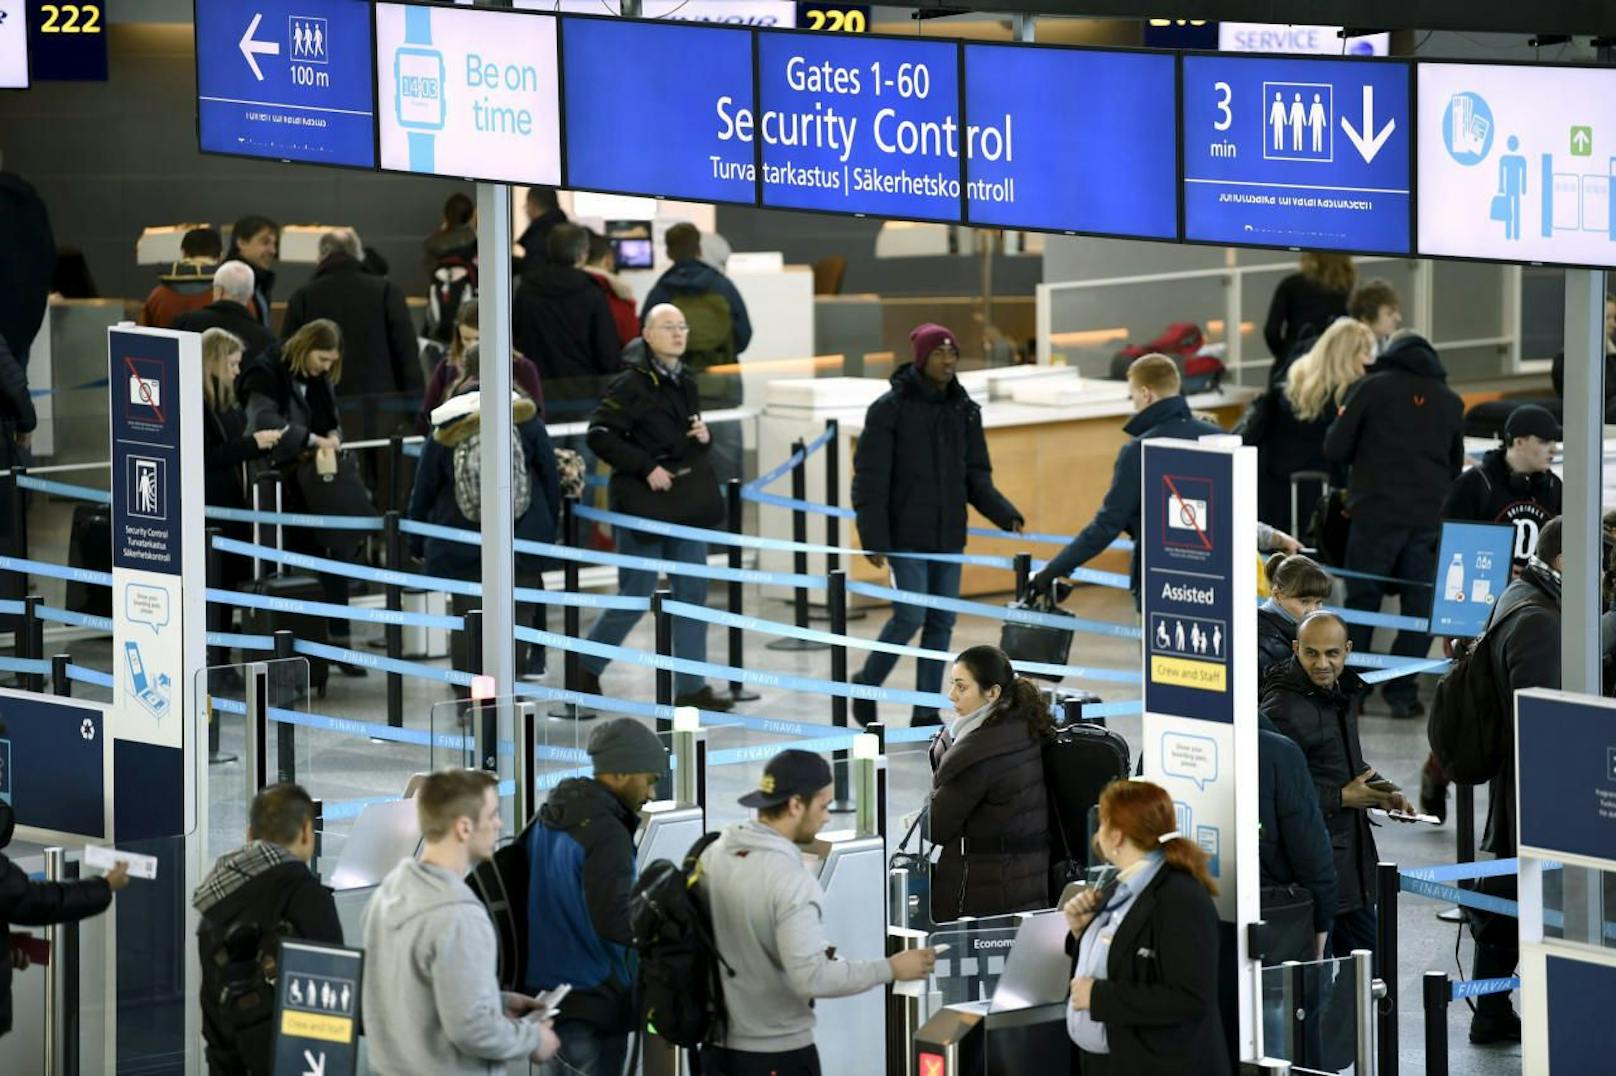 Passagiere während der Sicherheitskontrolle auf dem Flughafen Helsinki-Vantaa in Finnland. Archivbild, 2017.